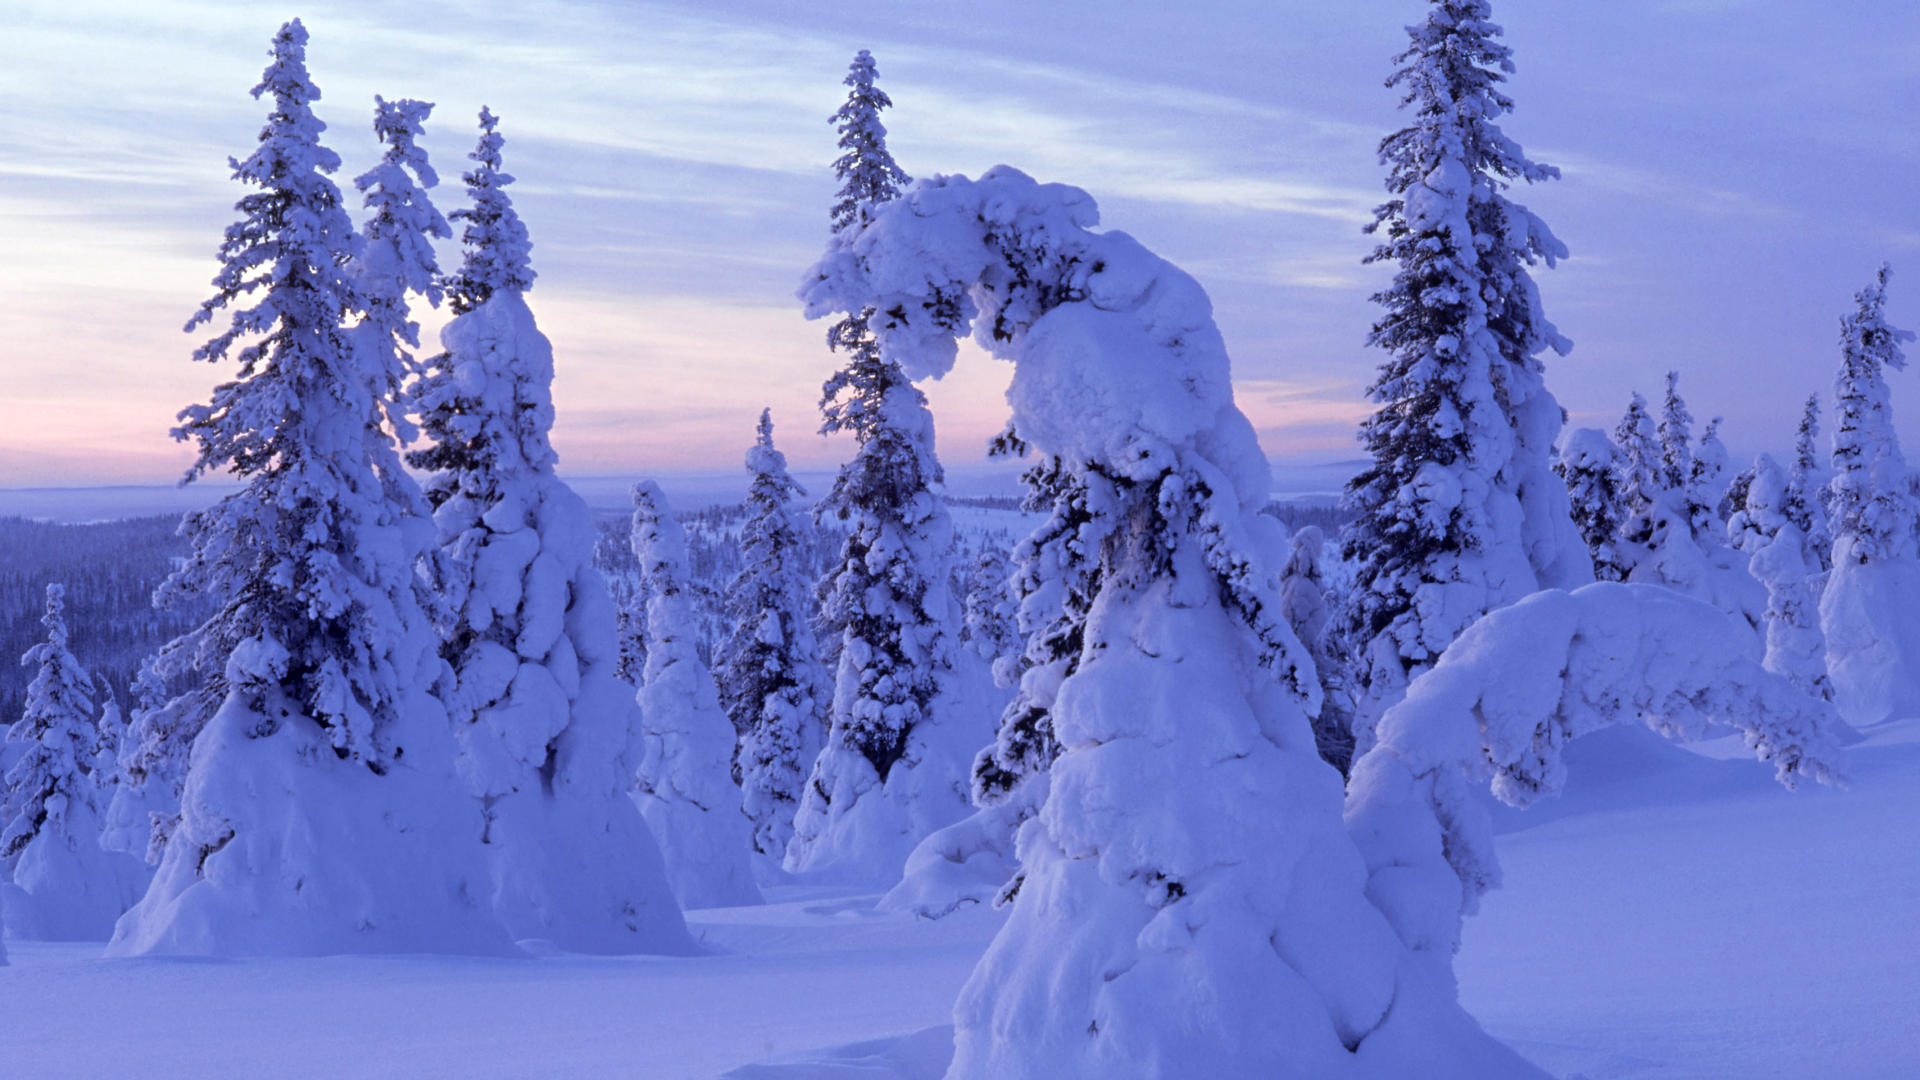 landscapes, snow, trees, forests - desktop wallpaper